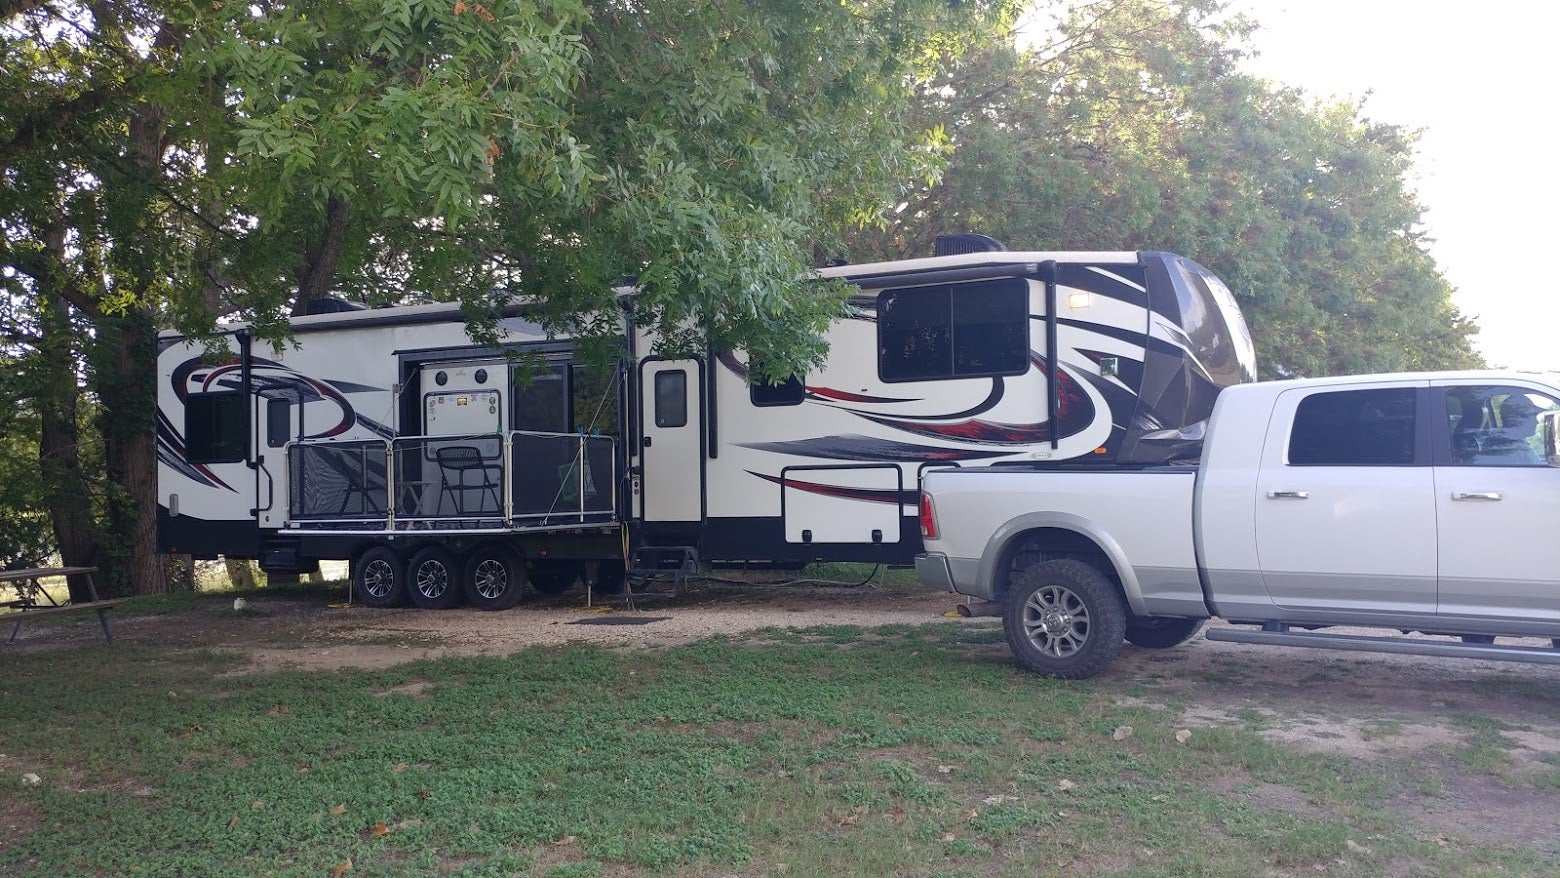 Our camper in site 17